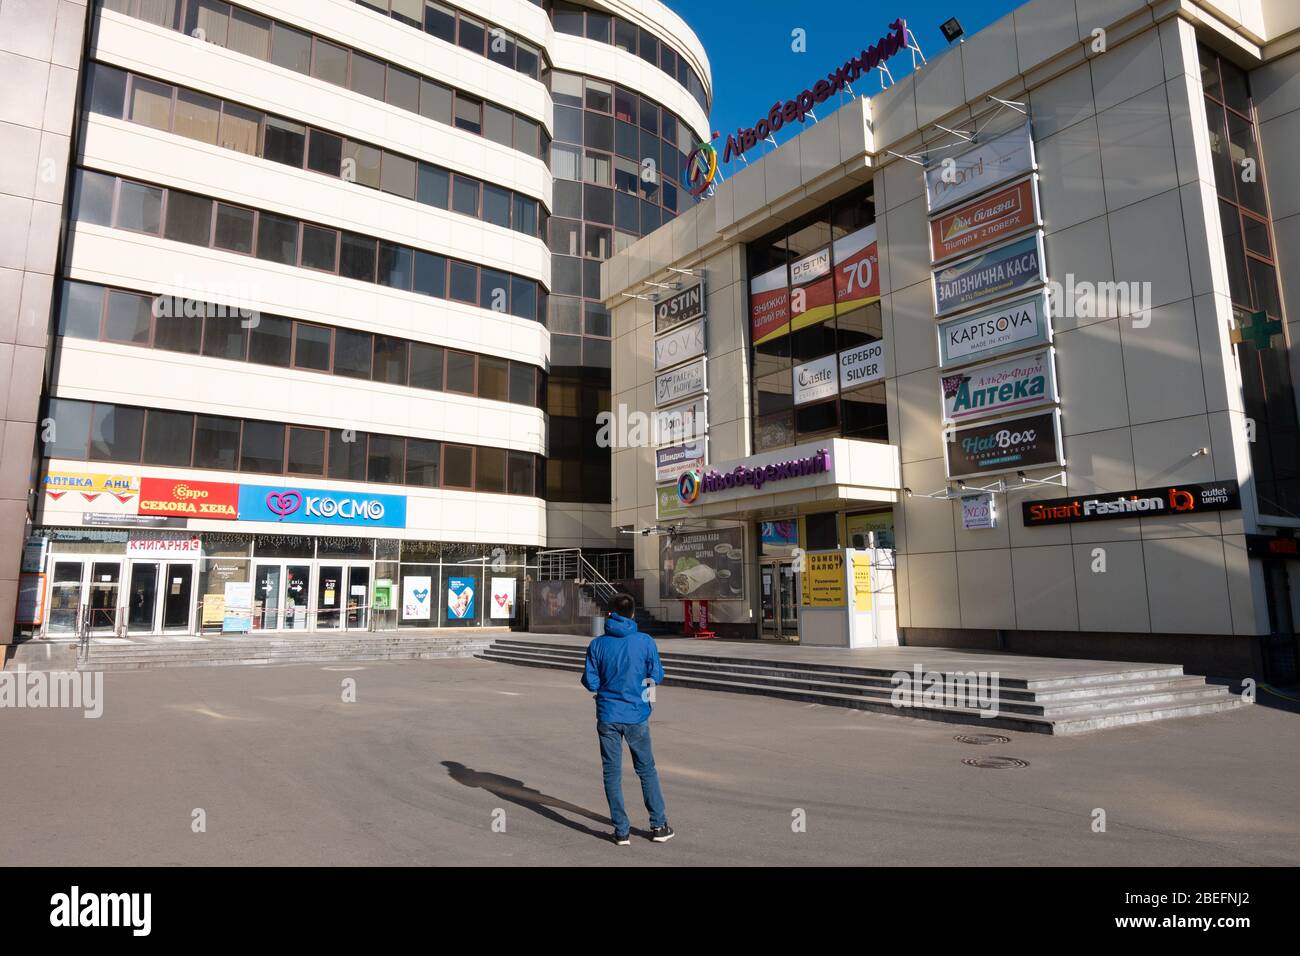 KIEV, UKRAINE - 5 AVRIL 2020: Centre commercial de livoberezhnyi fermé avec un seul homme devant lui. Endroit vide inhabituel près du métro Livoberezhna Banque D'Images